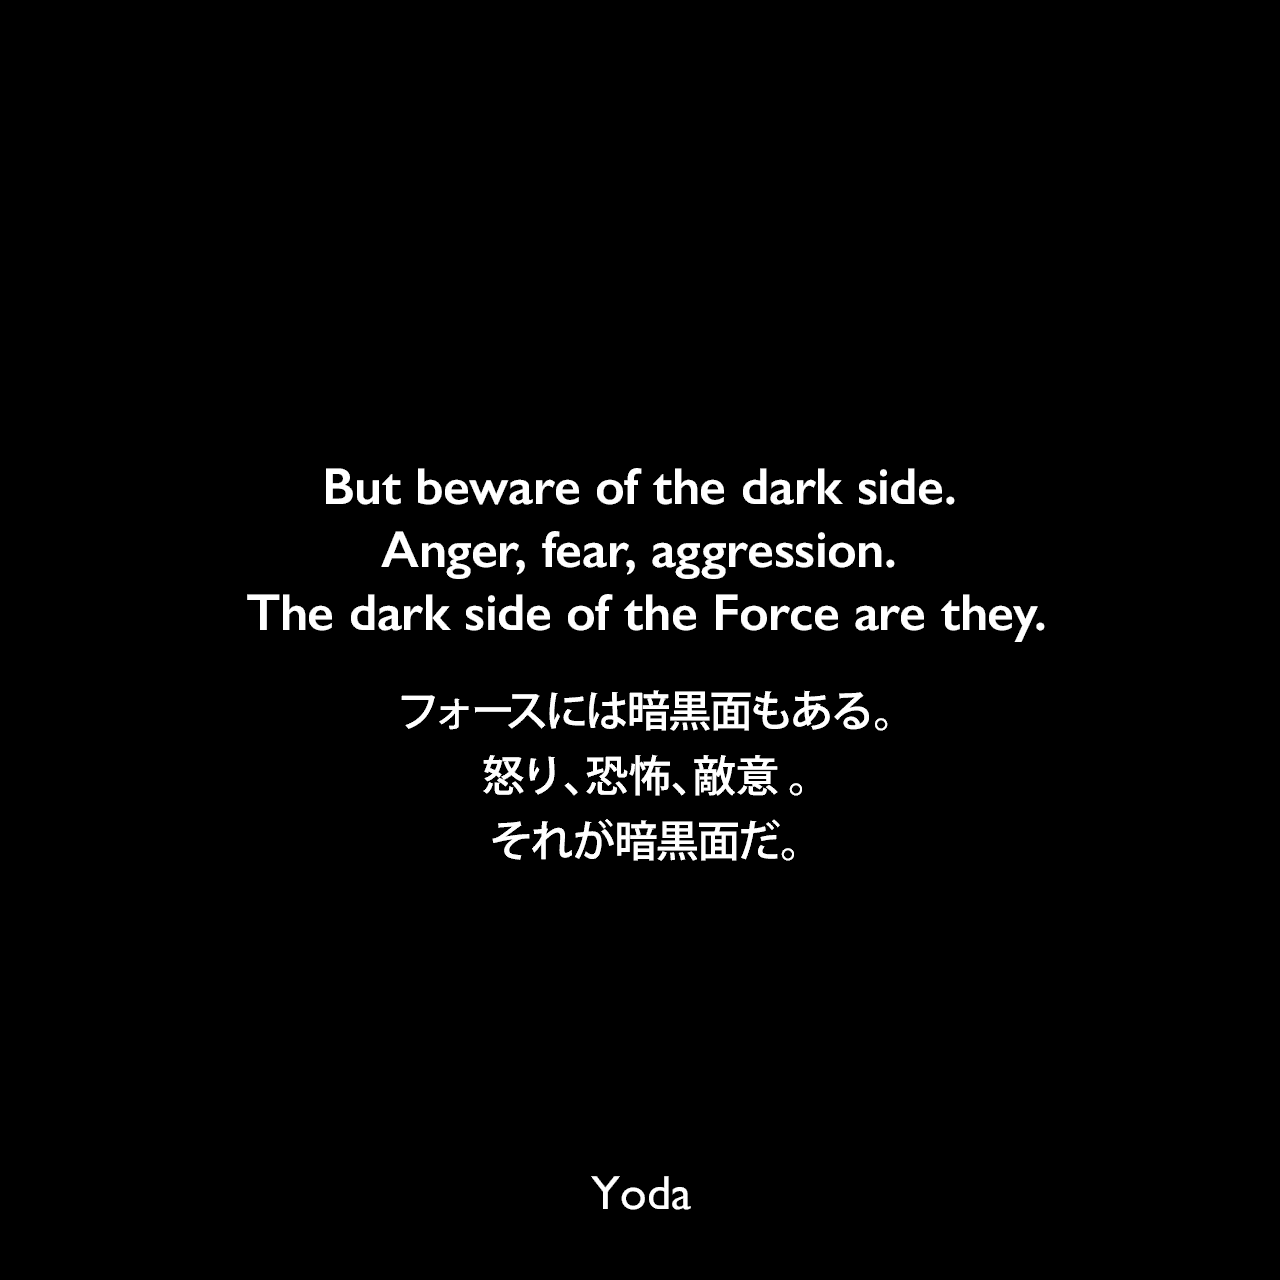 But beware of the dark side. Anger, fear, aggression. The dark side of the Force are they.フォースには暗黒面もある。怒り、恐怖、敵意 。それが暗黒面だ。- スター・ウォーズ エピソード5/帝国の逆襲Yoda